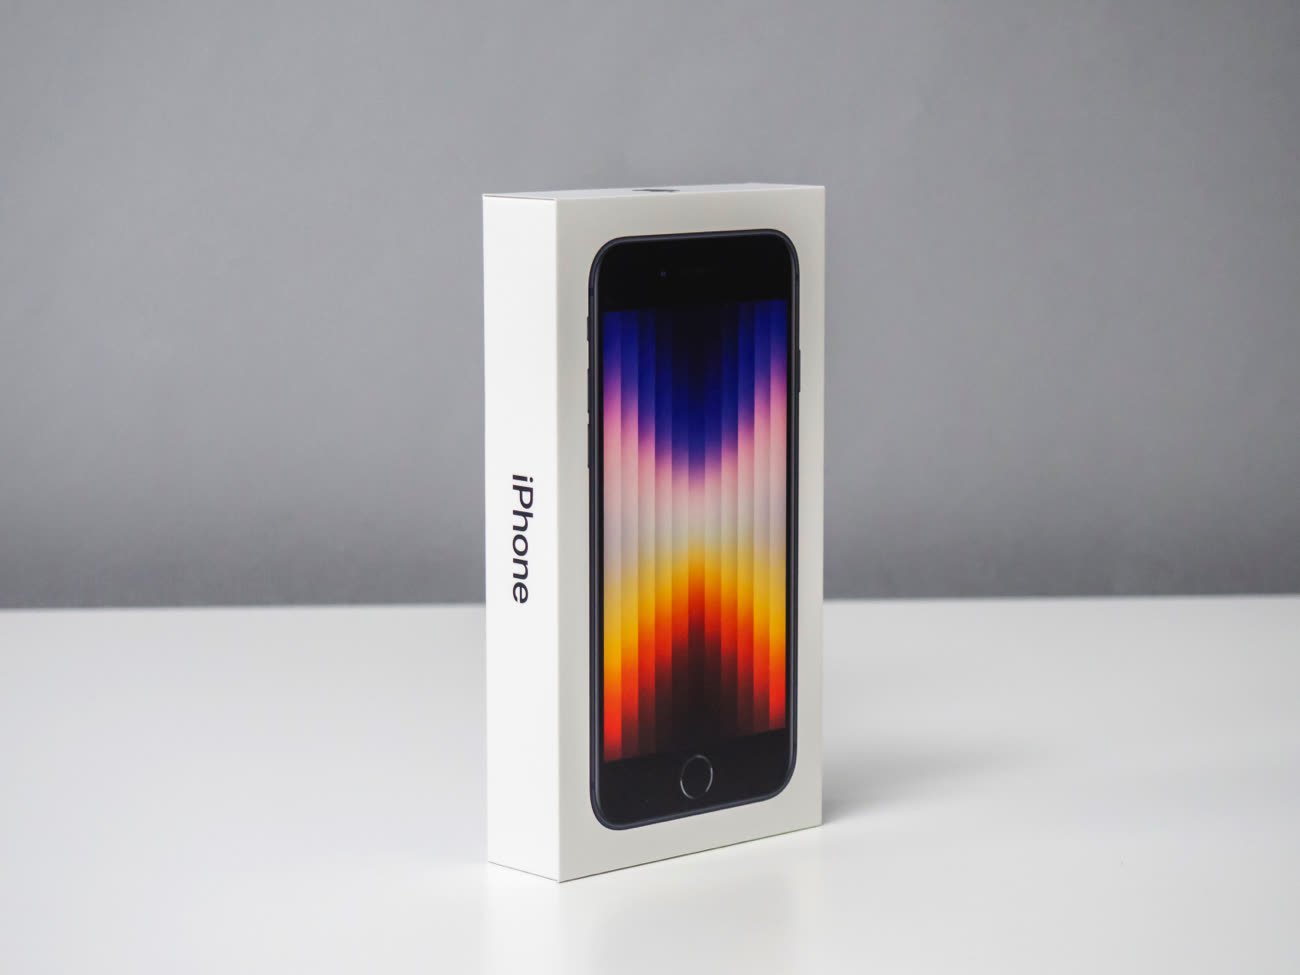 iPhone SE 2020 pas cher : où l'acheter au meilleur prix ?